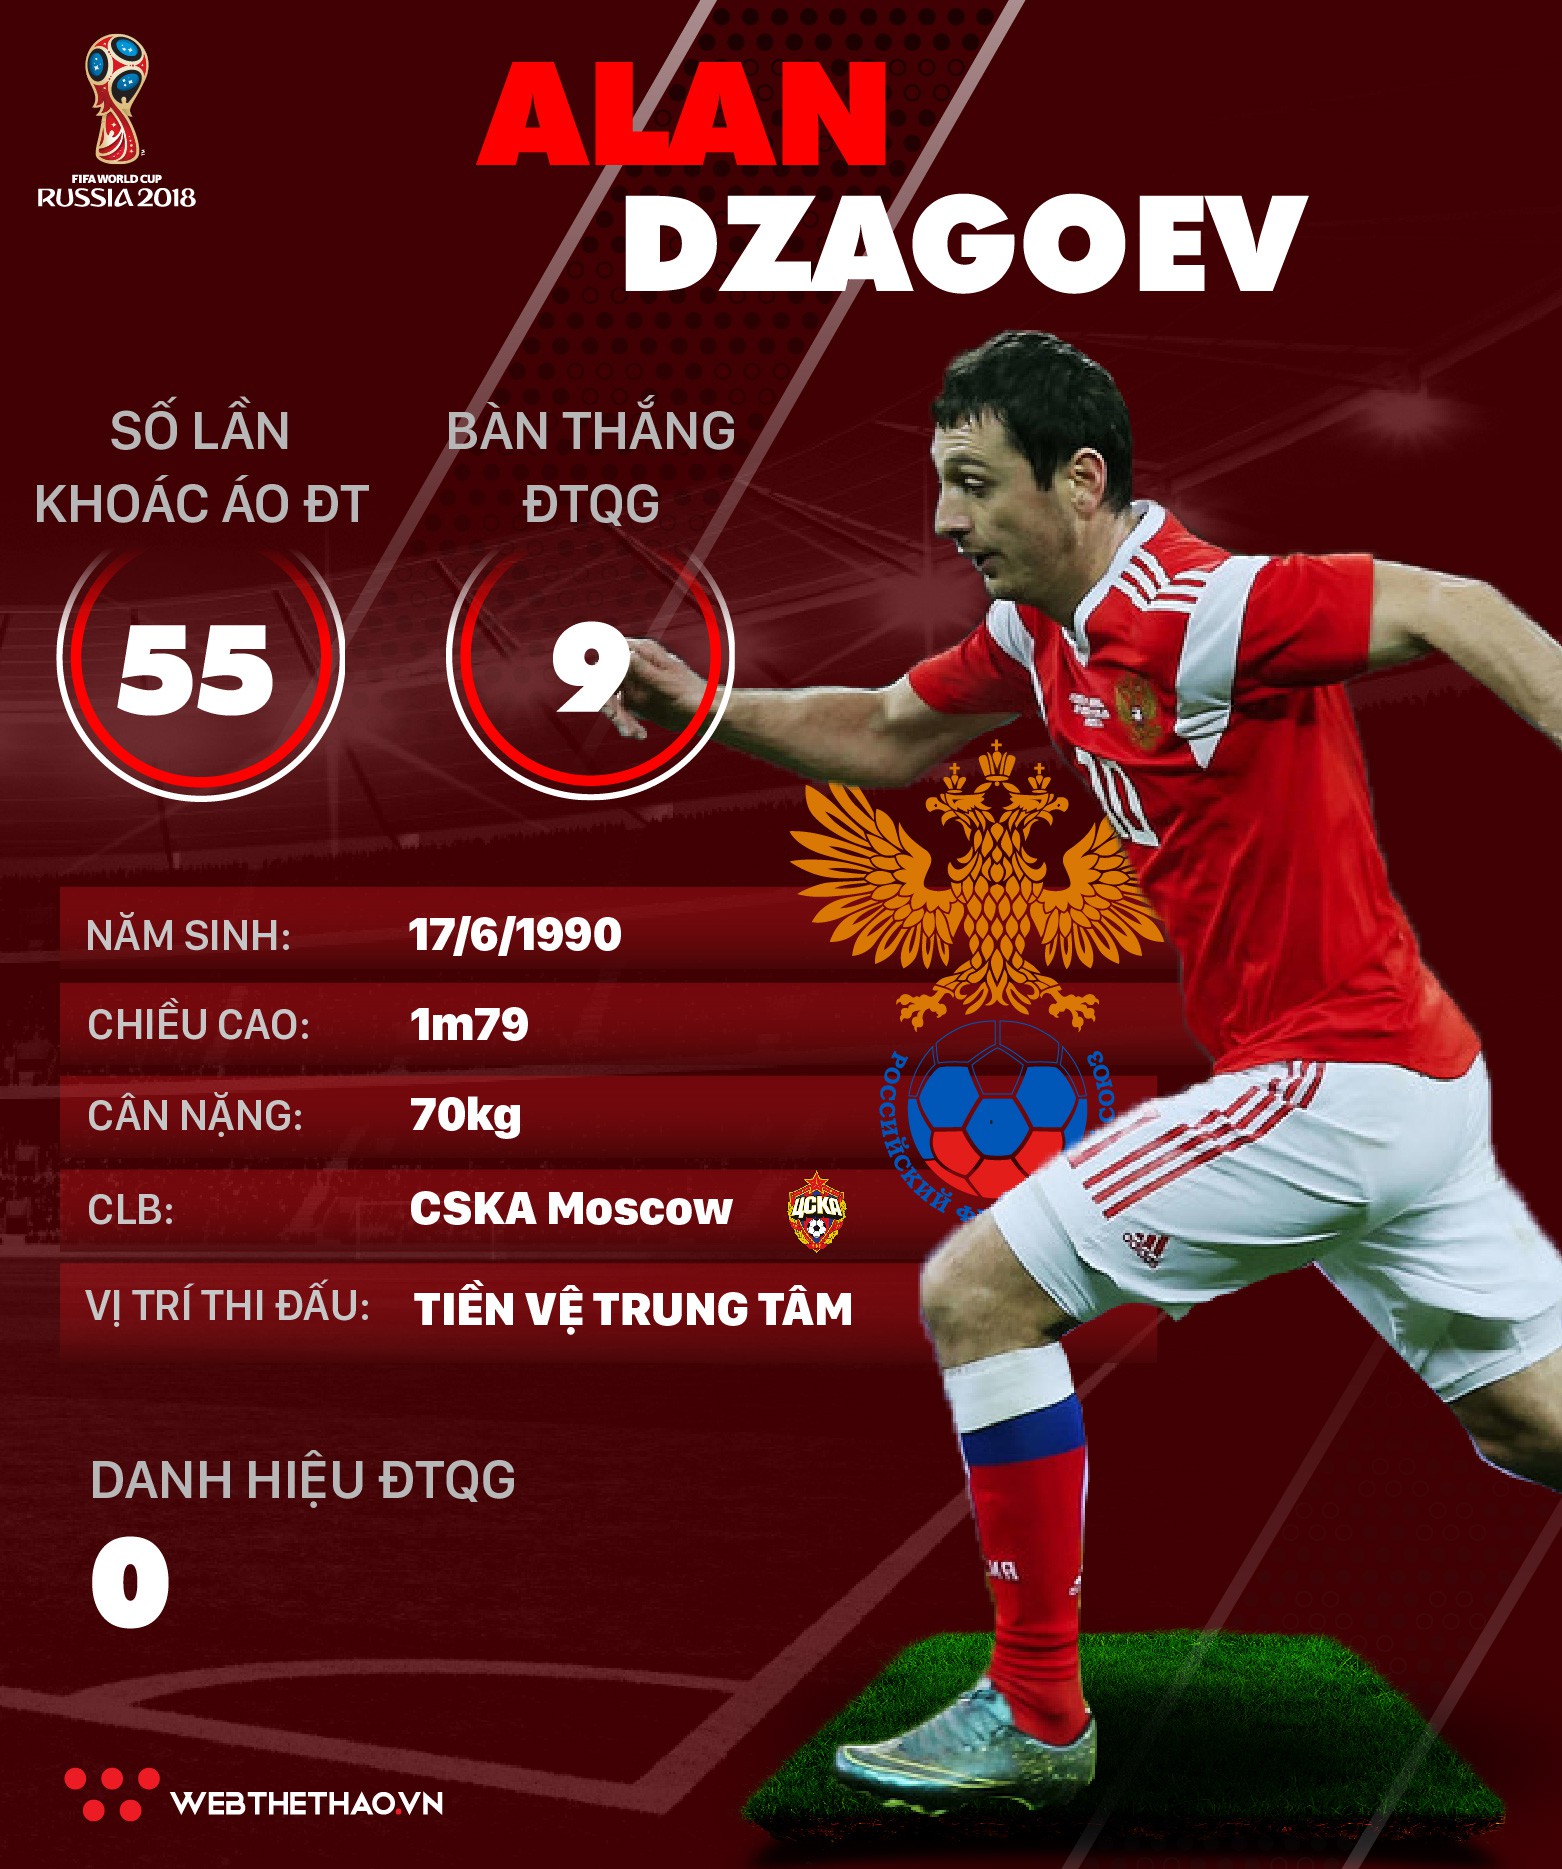 Thông tin cầu thủ Alan Dzagoev của ĐT Nga dự World Cup 2018 - Ảnh 1.